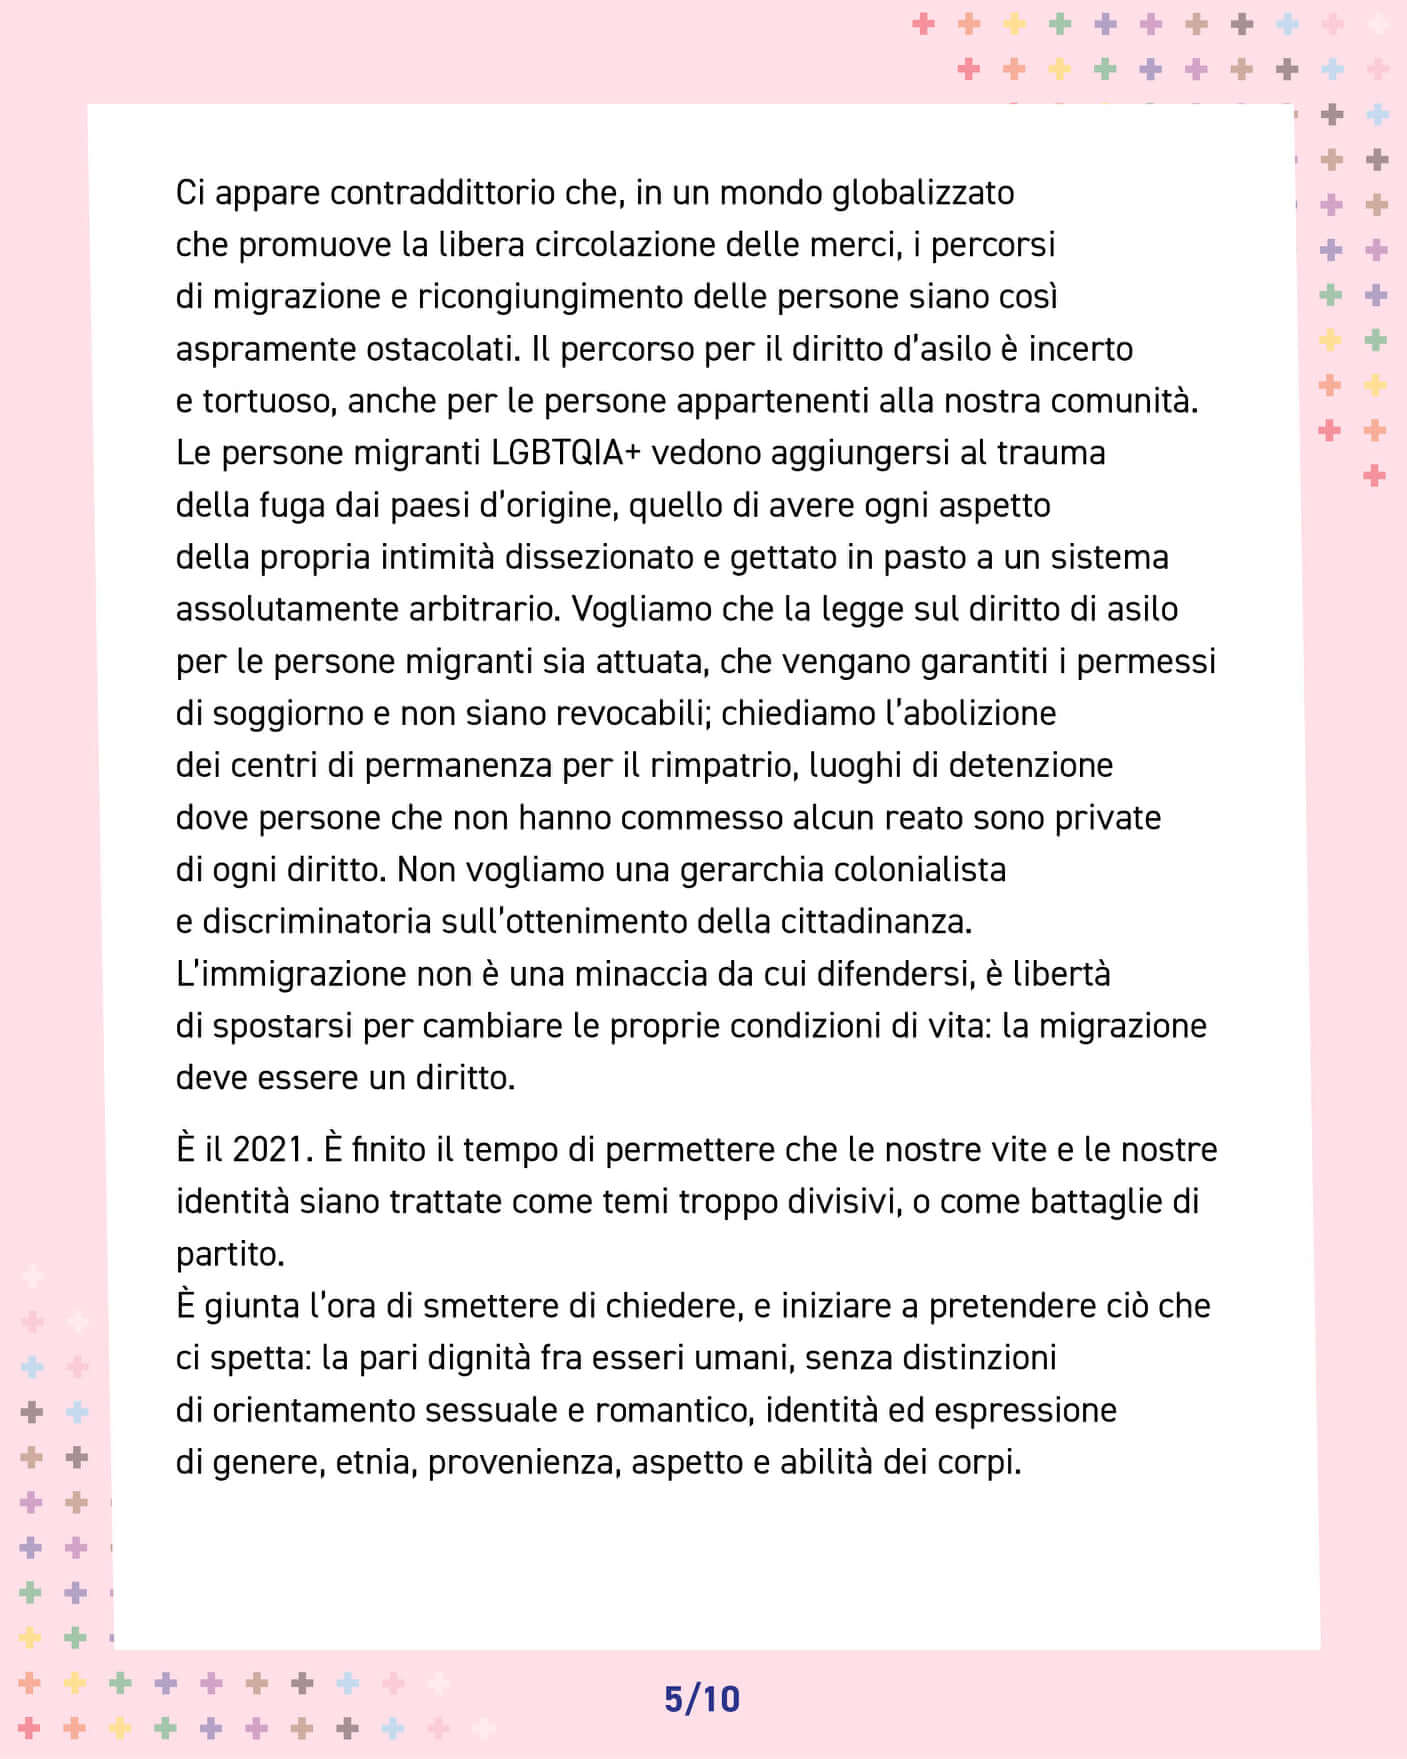 Sardegna Pride 2021, il 10 luglio tutti in piazza a Sassari e Cagliari - Sardegna Pride 4 - Gay.it